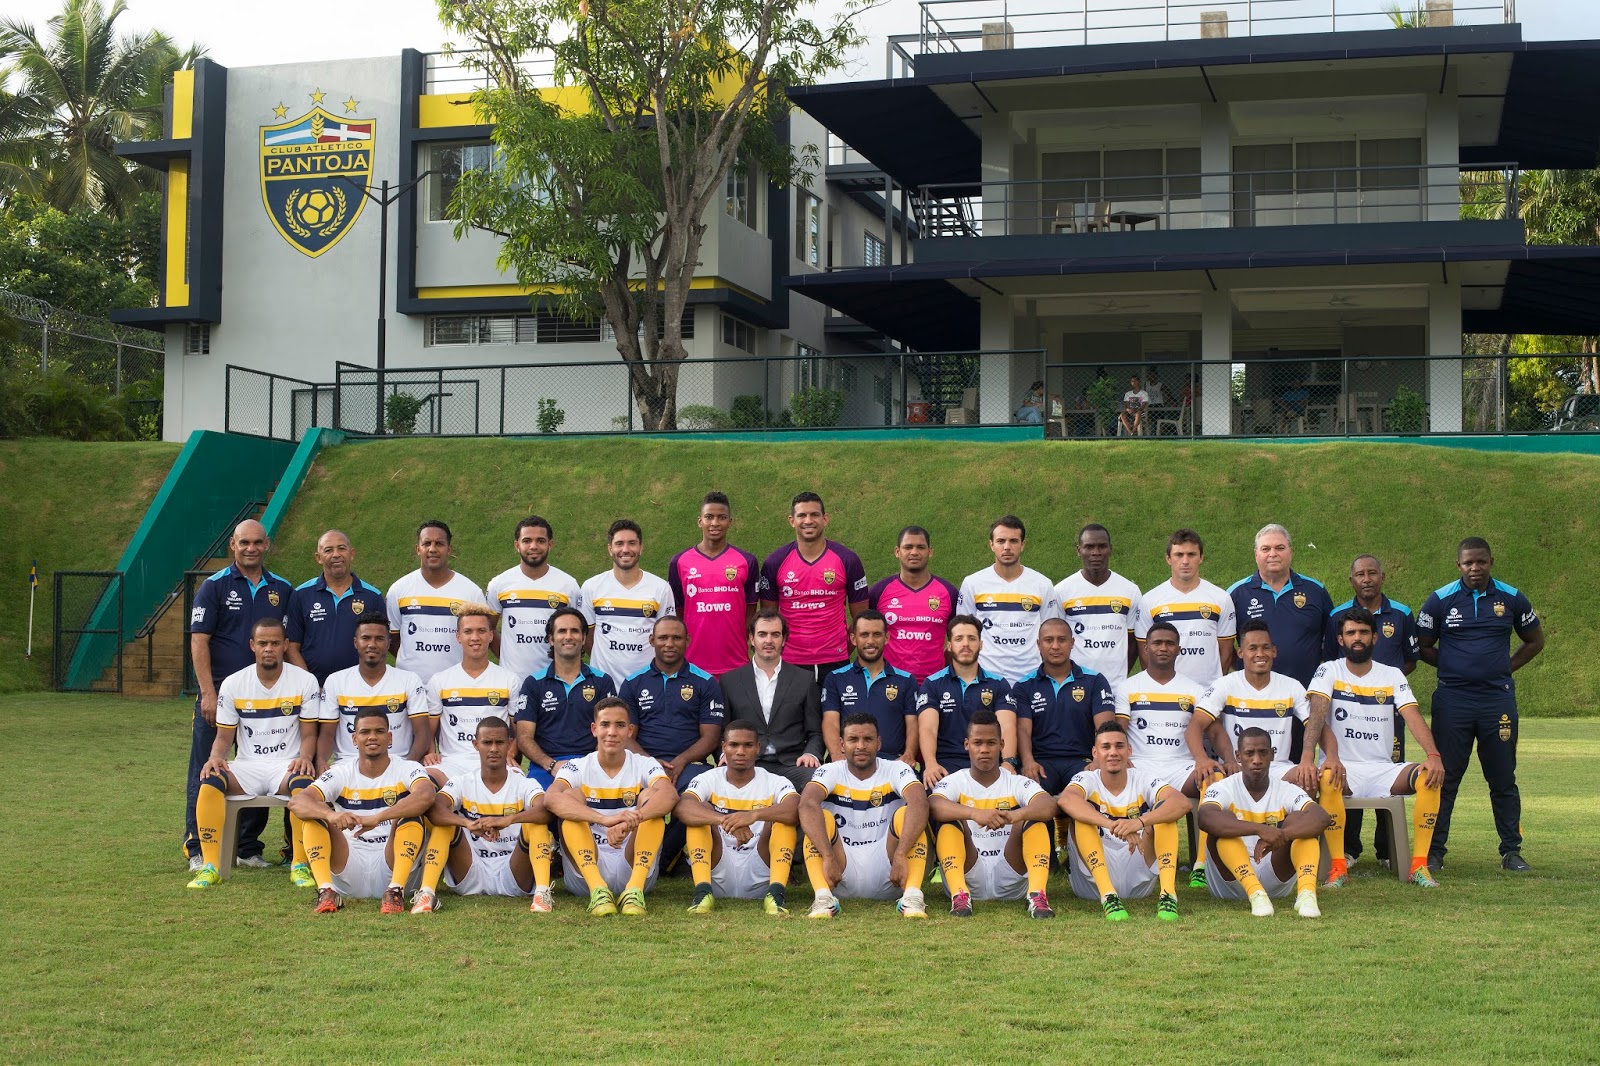 Club Atlético Pantoja realiza gira internacional de pretemporada - Balompié  Dominicano